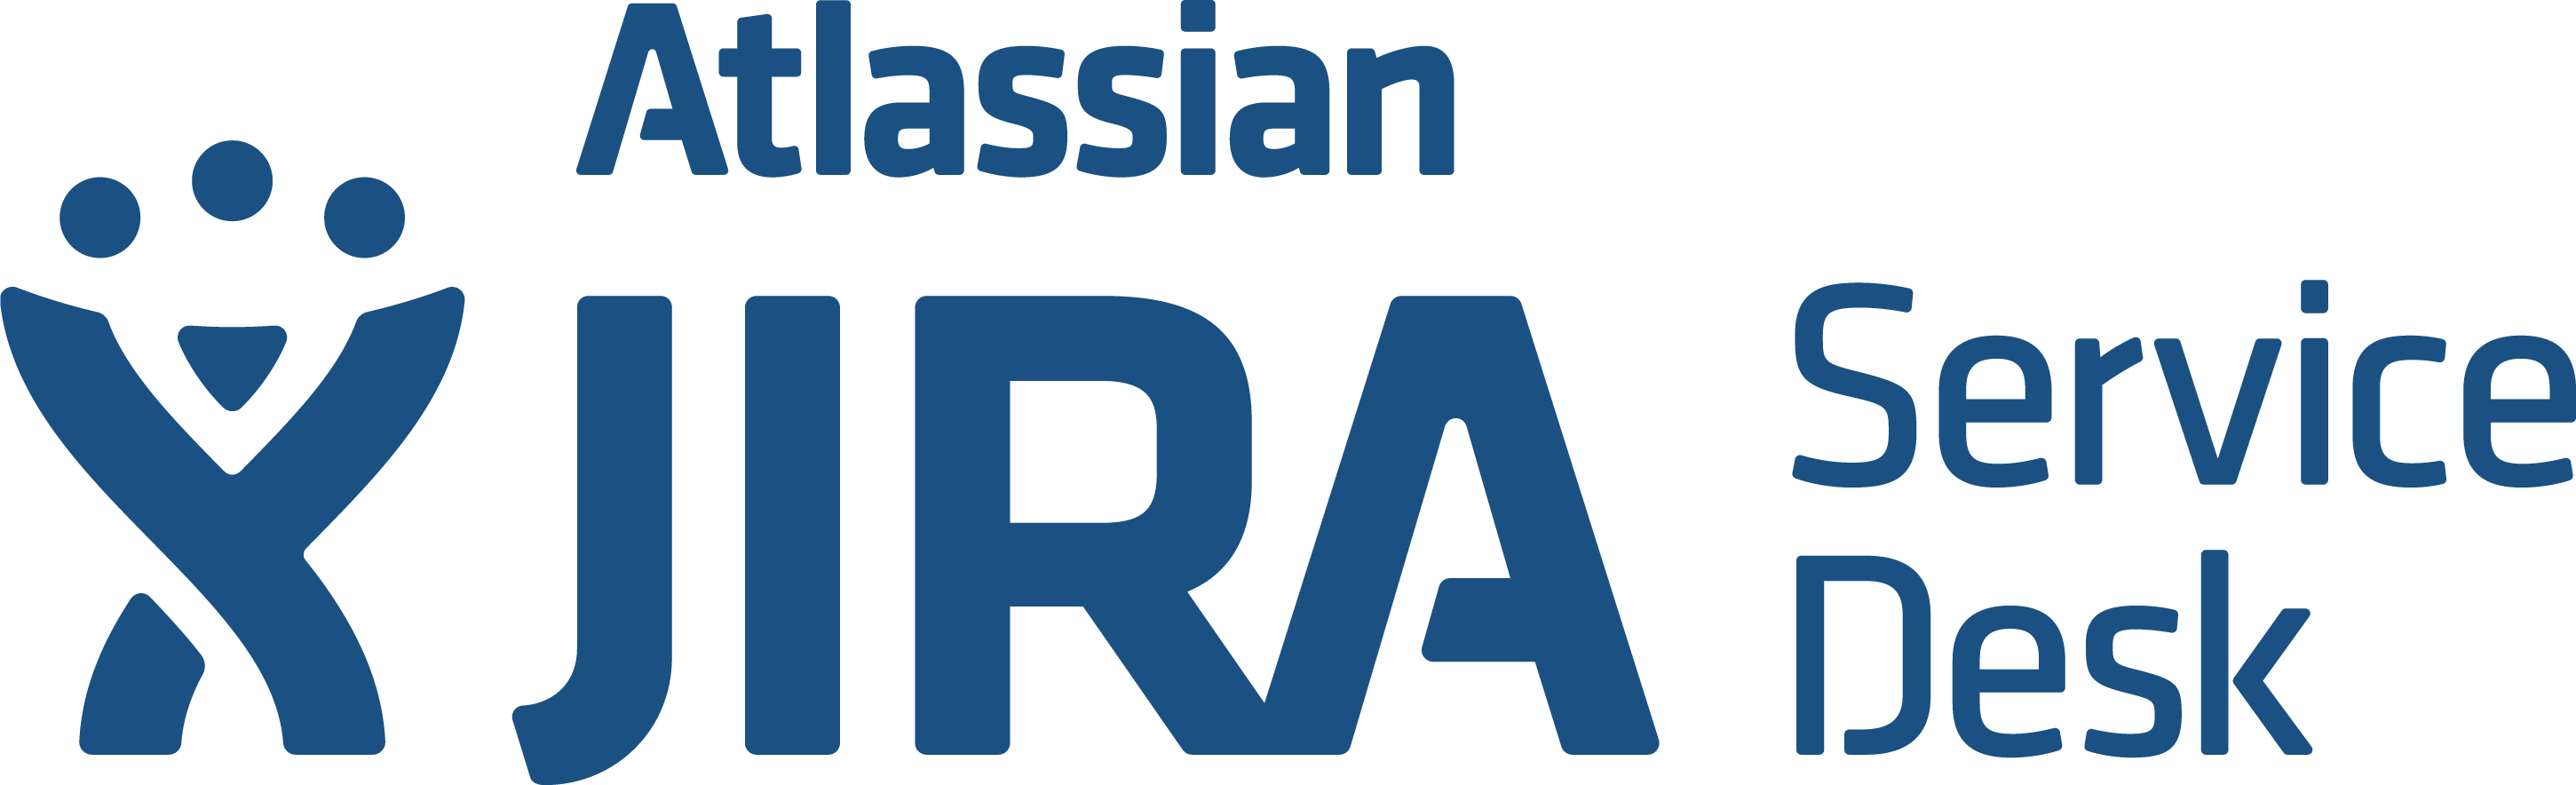 Atlassian Jira Service Desk